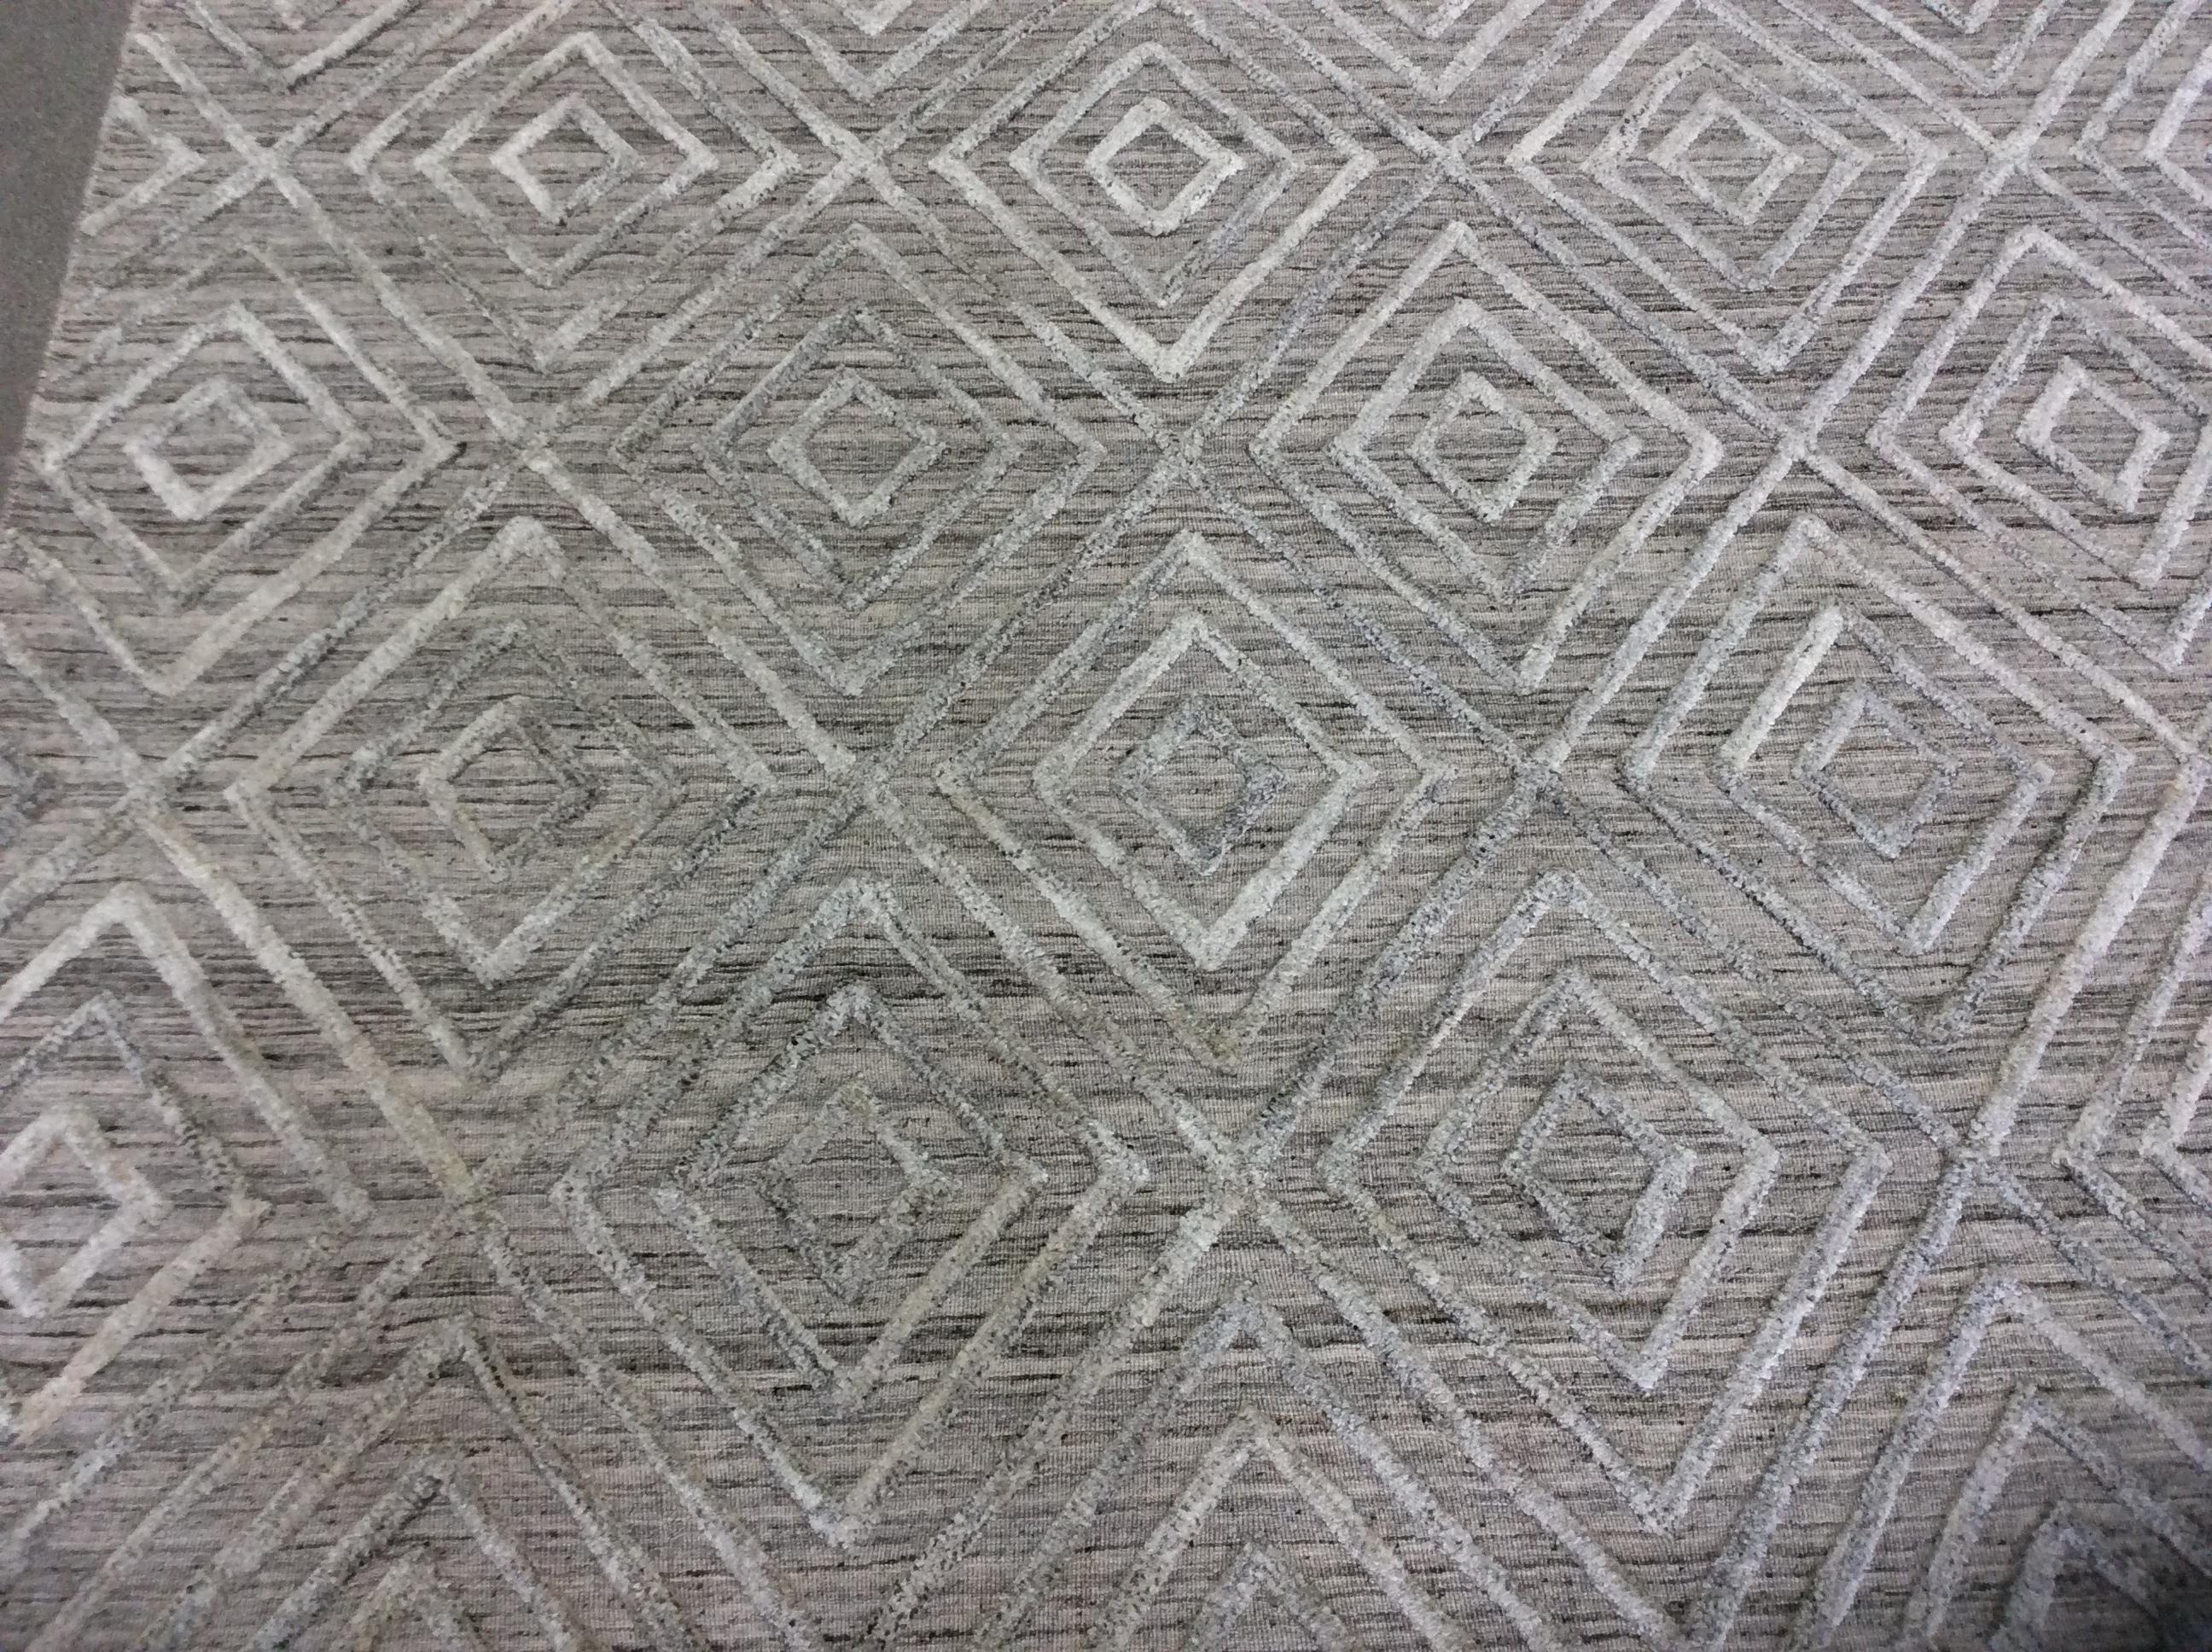 Geometrischer, niedriger, moderner Teppich in Taupe

Das hohe, niedrige Design sorgt für einen lässigen, aber polierten Look. Mit neutraler Farbe und erhabenem geometrischem Muster.